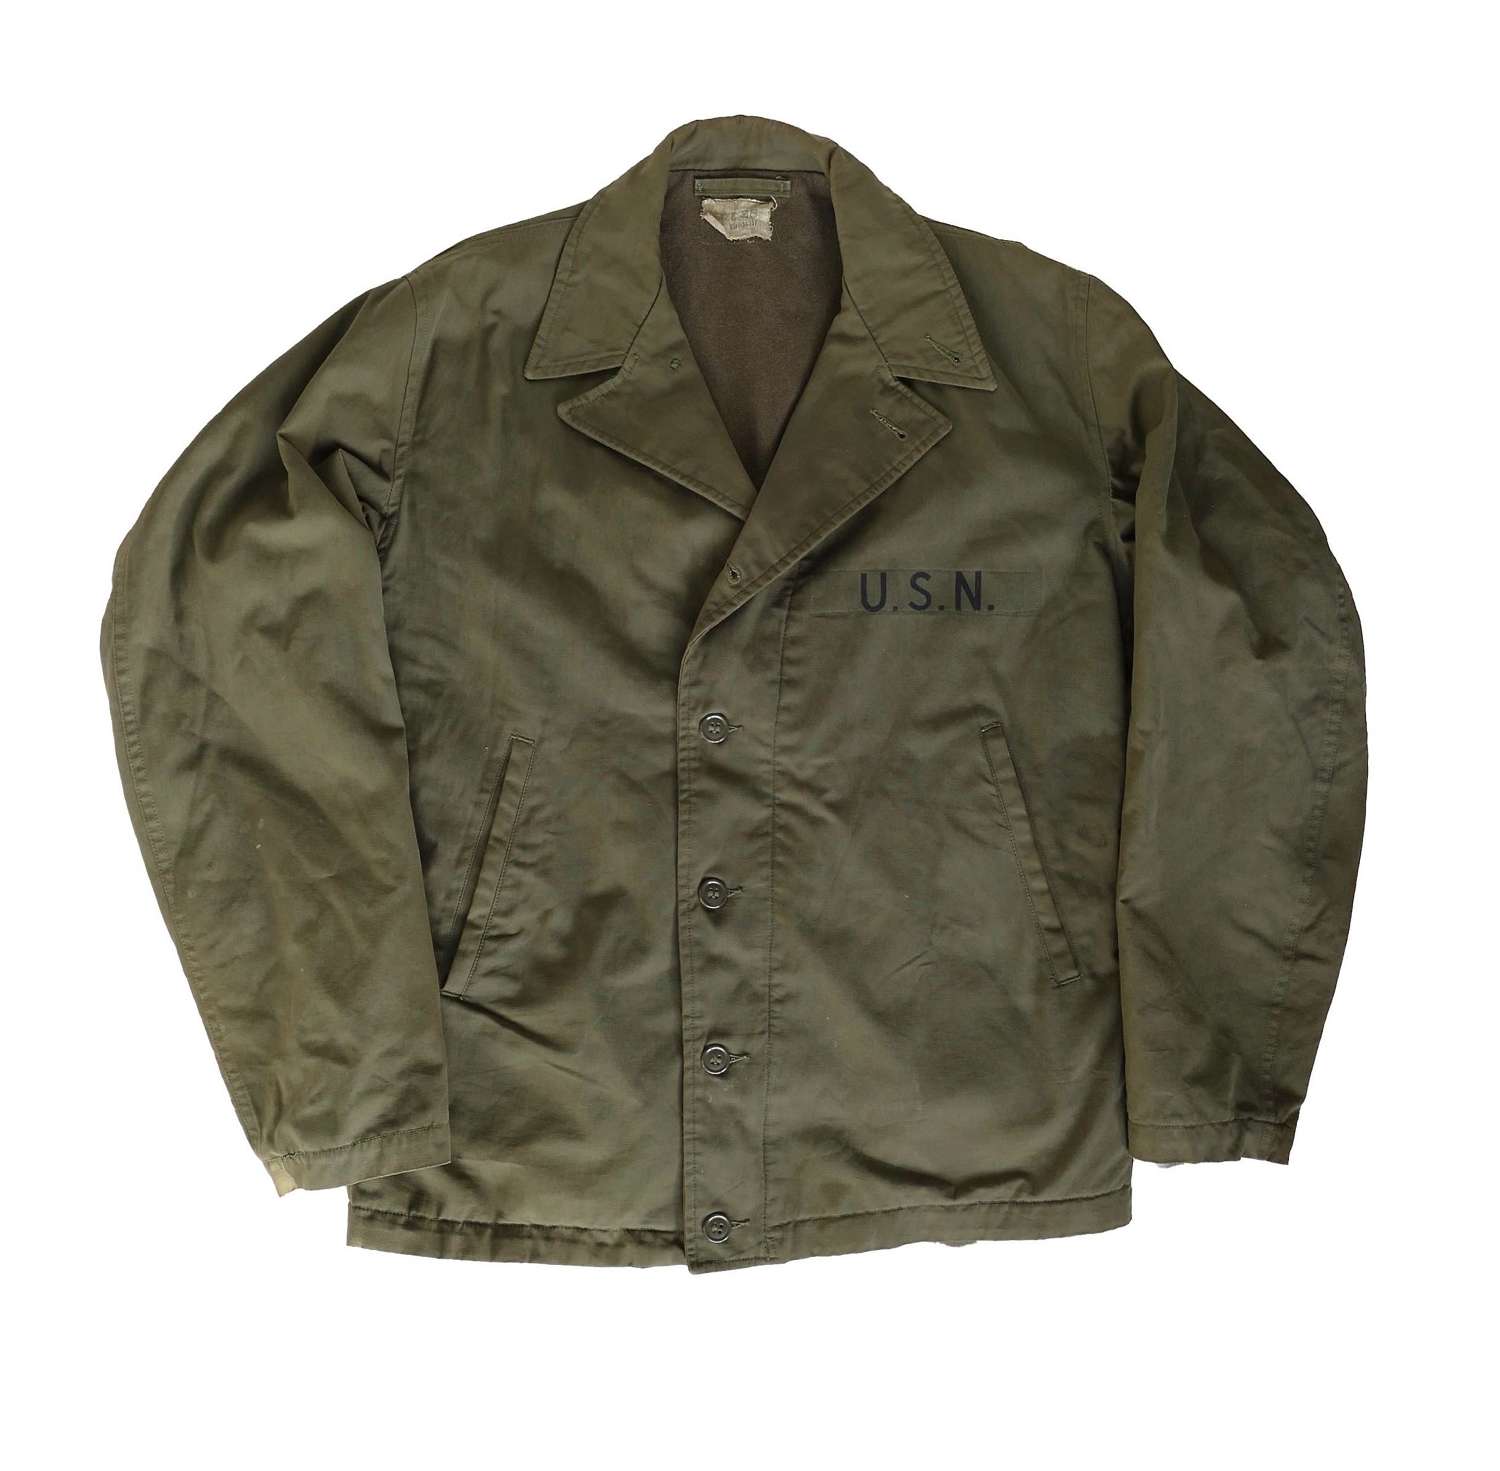 USN M-1941 jacket